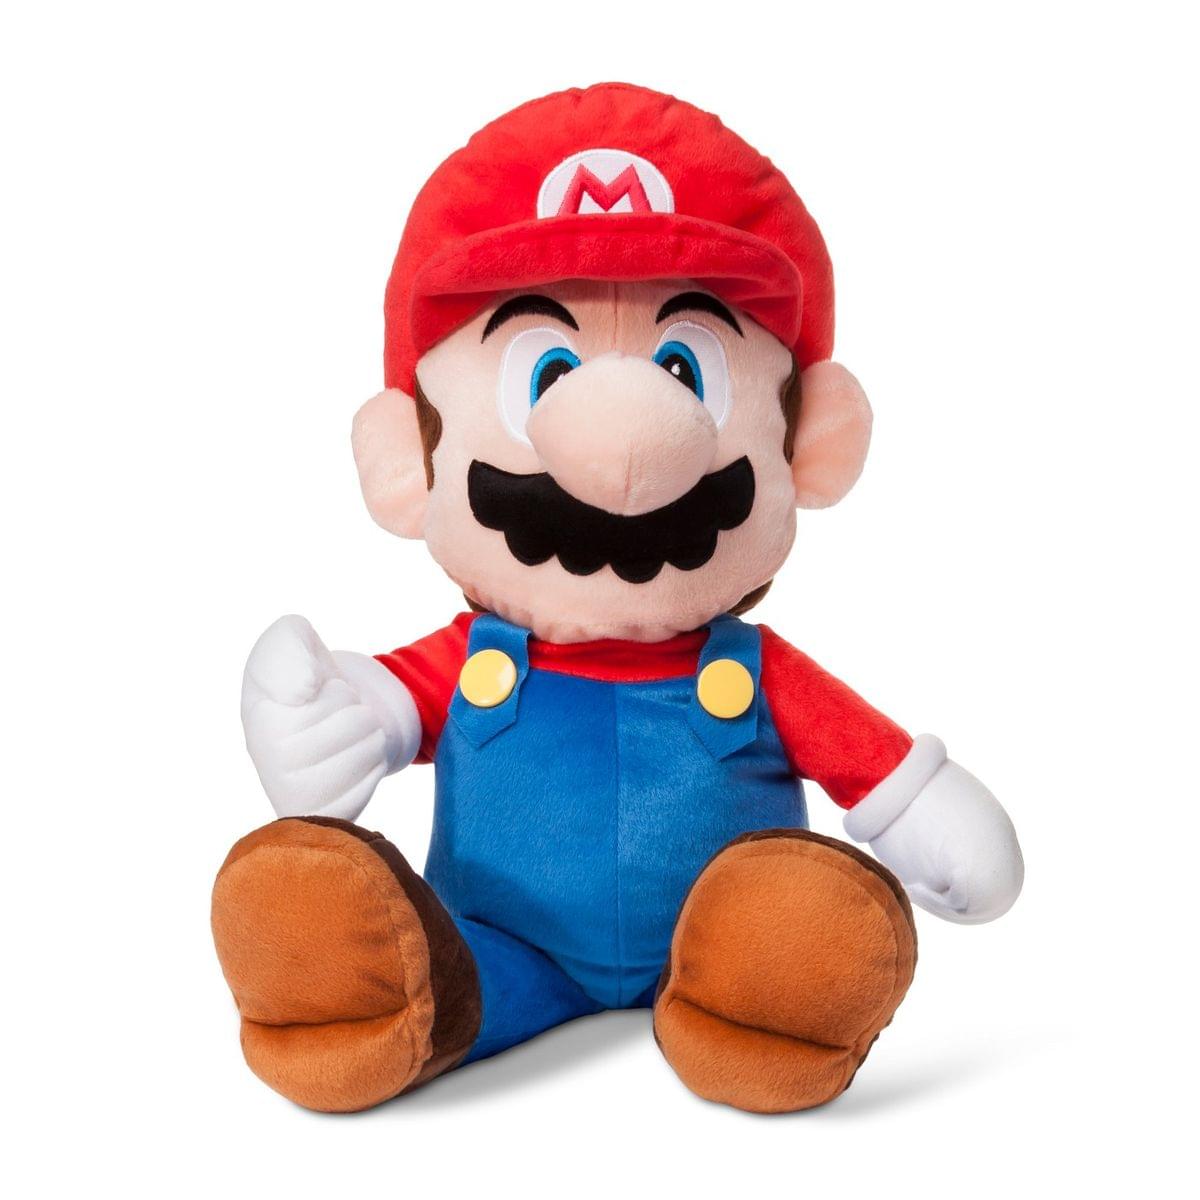 Super Mario 22" Plush Pillow